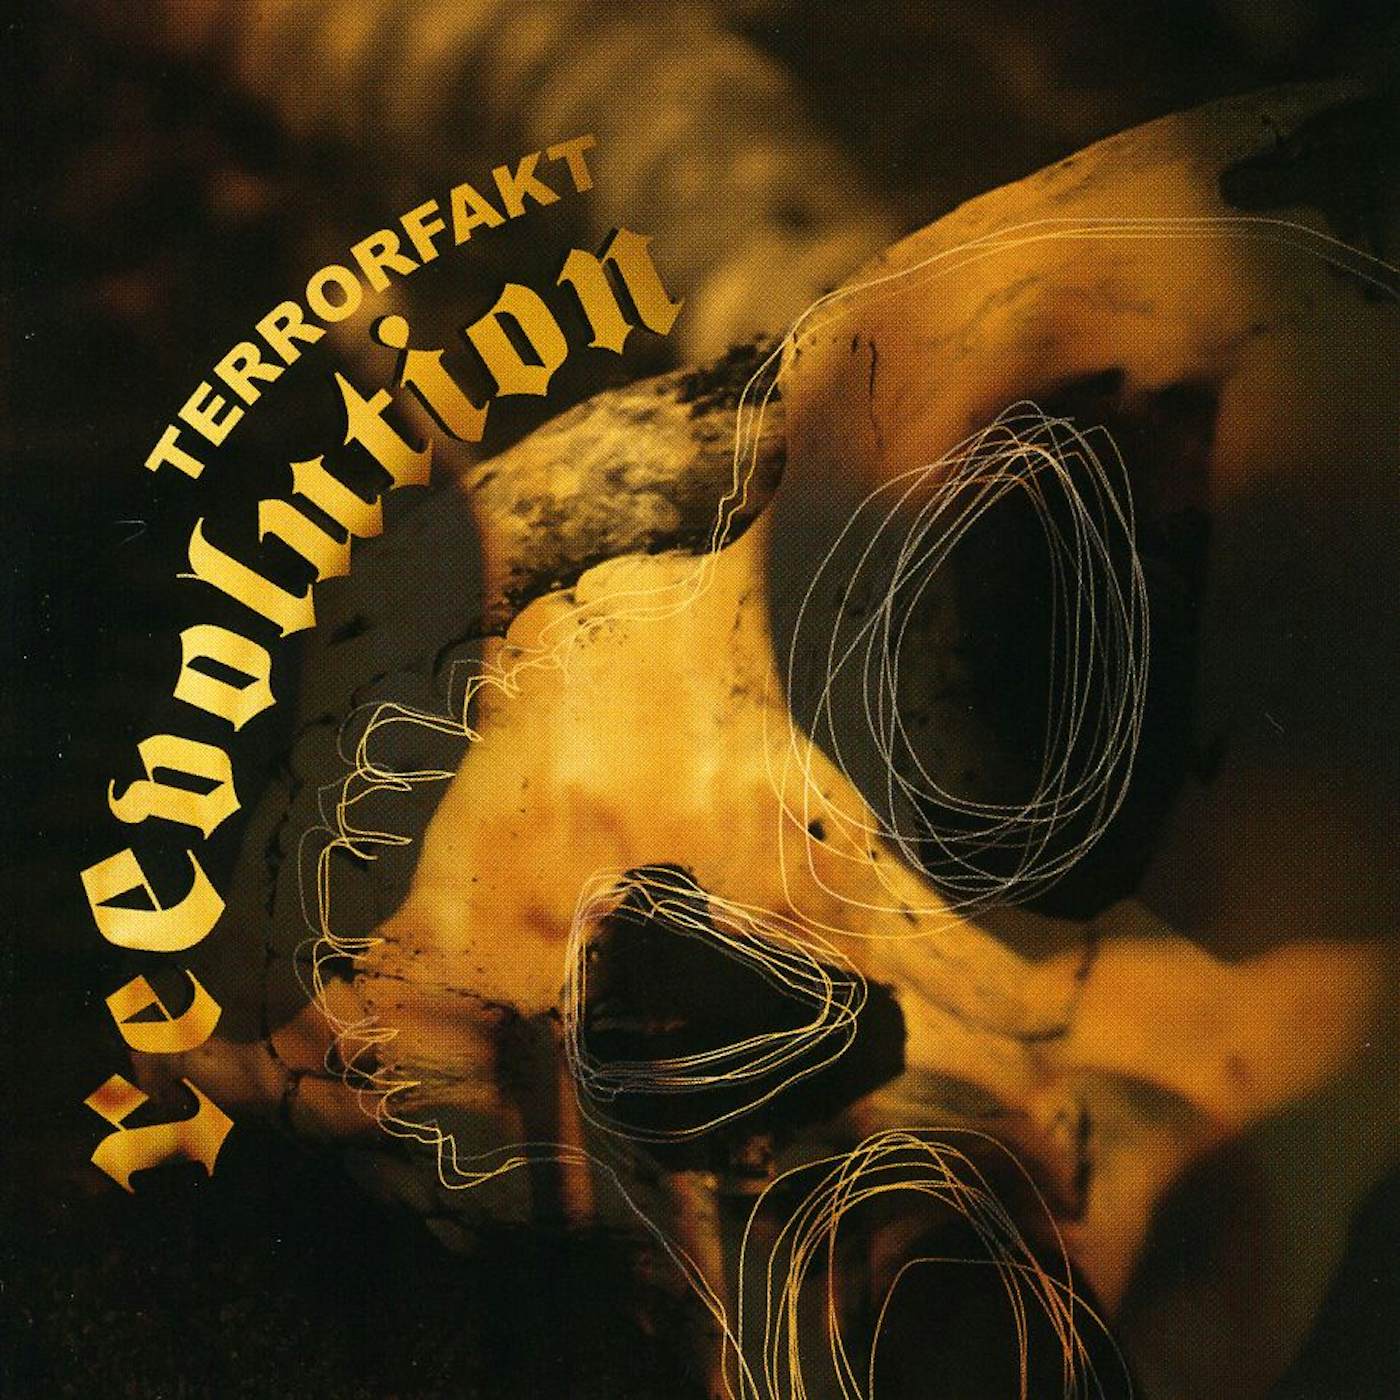 Terrorfakt REEVOLUTION CD